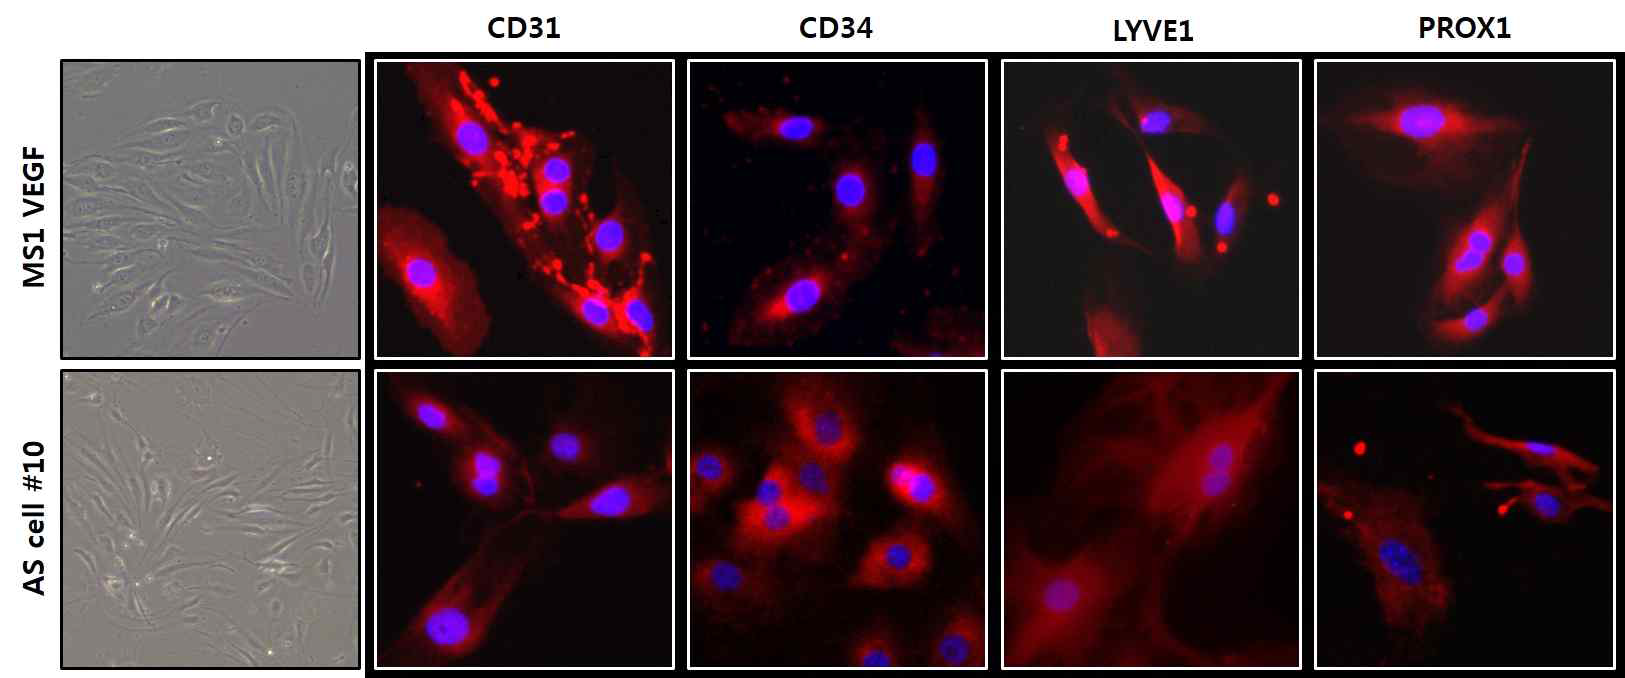 췌장 혈관 육종 세포와 VECre;P53fl/fl 모델 유래 혈관 육종 세포에서 endothelial cell marker-CD31, CD34와 혈관 육종 maker-LYVE1, PROX1의 발현을 확인